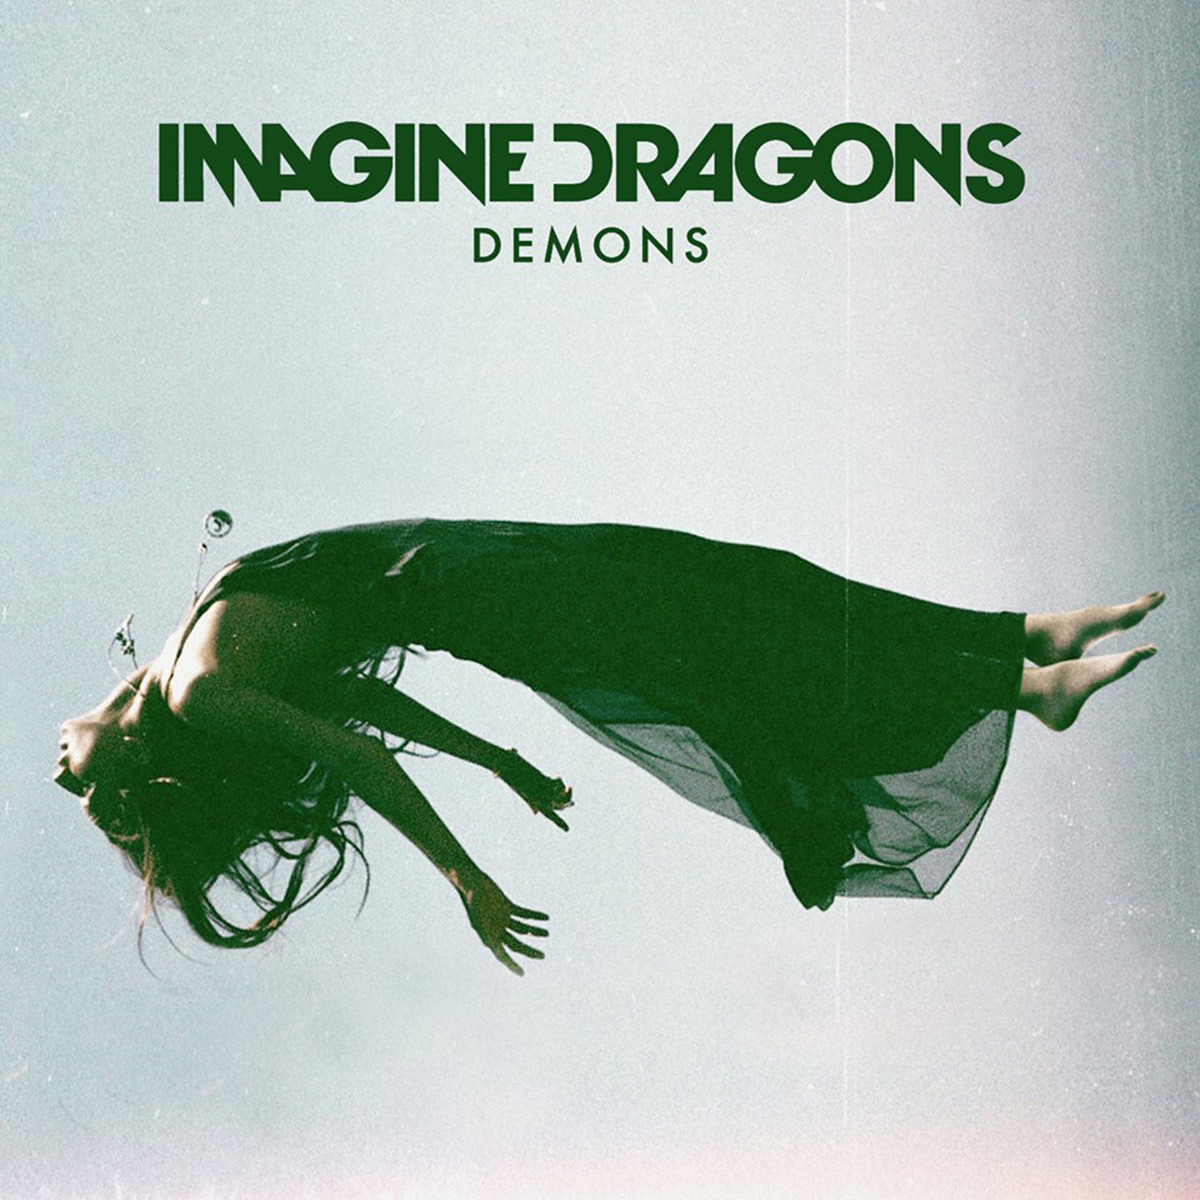 Gli Imagine Dragons sono la rivelazione rock del 2013. Da oggi in radio "Demons"